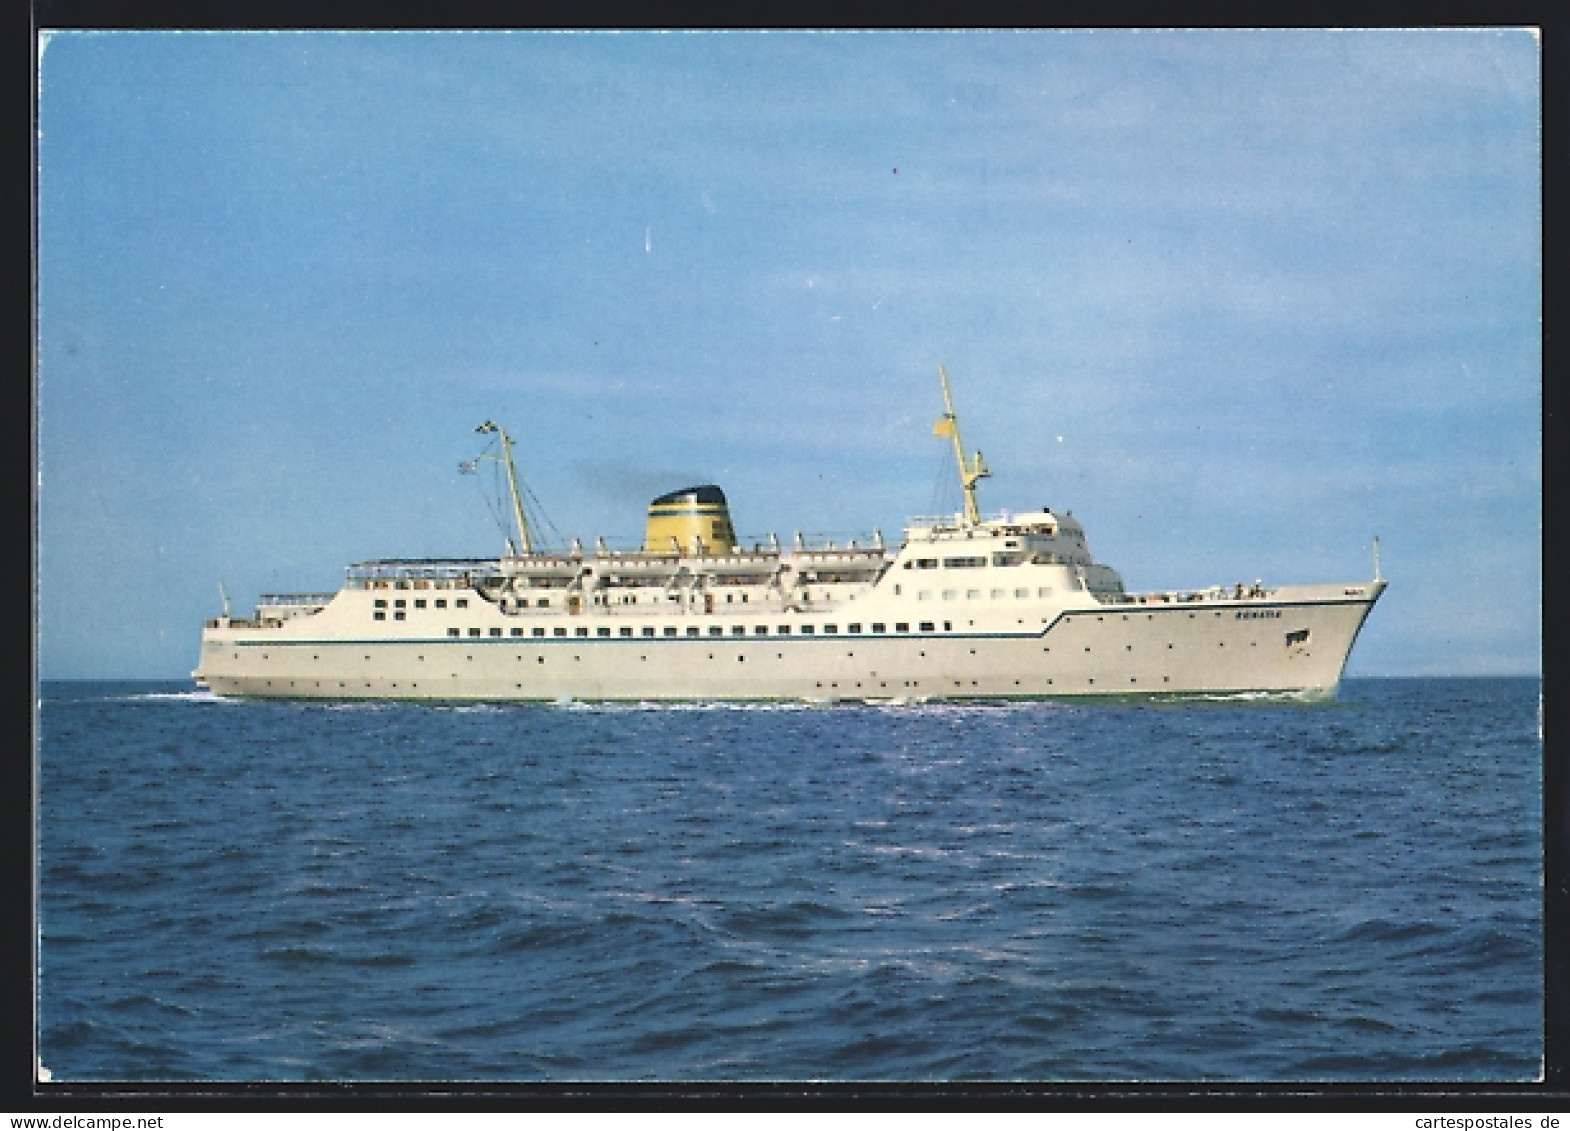 AK Hellenic Mediterranean Lines Passagierschiff Egnatia  - Passagiersschepen